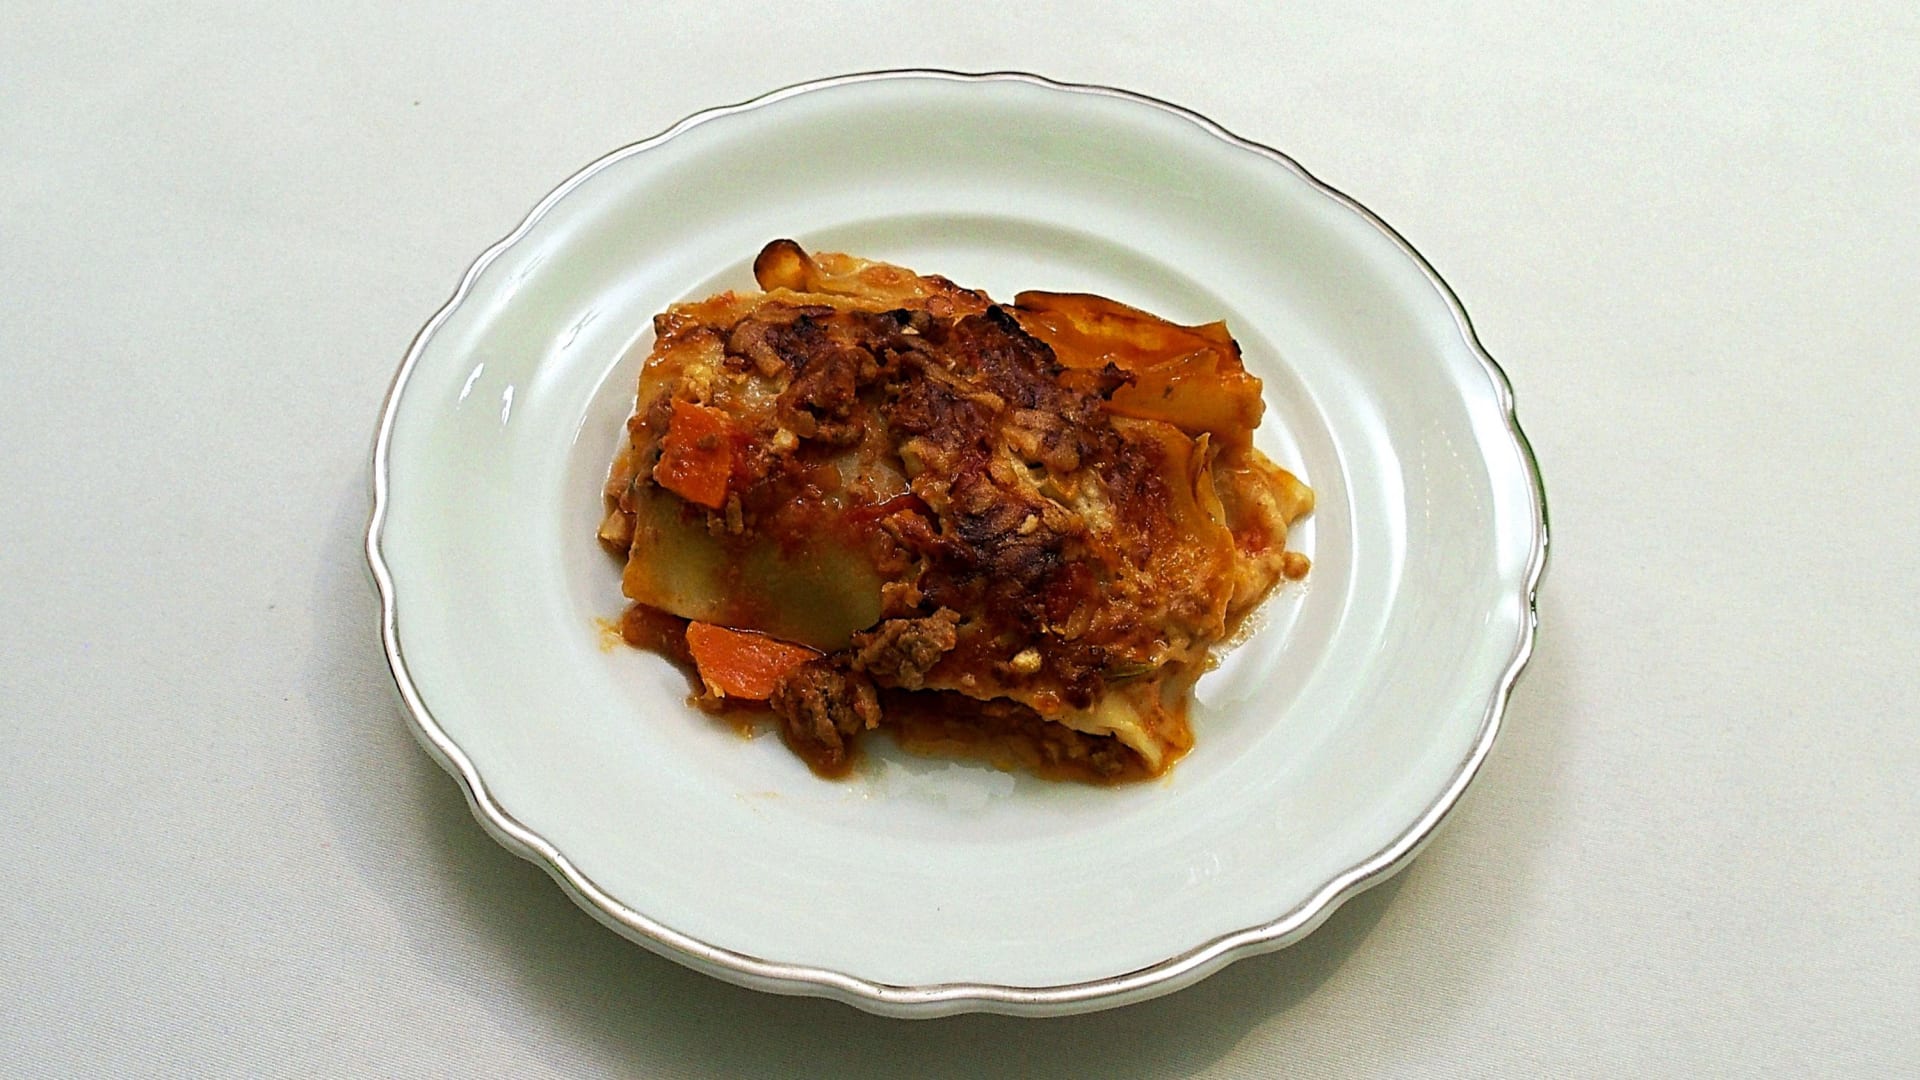 Lasagne s boloňskou omáčkou